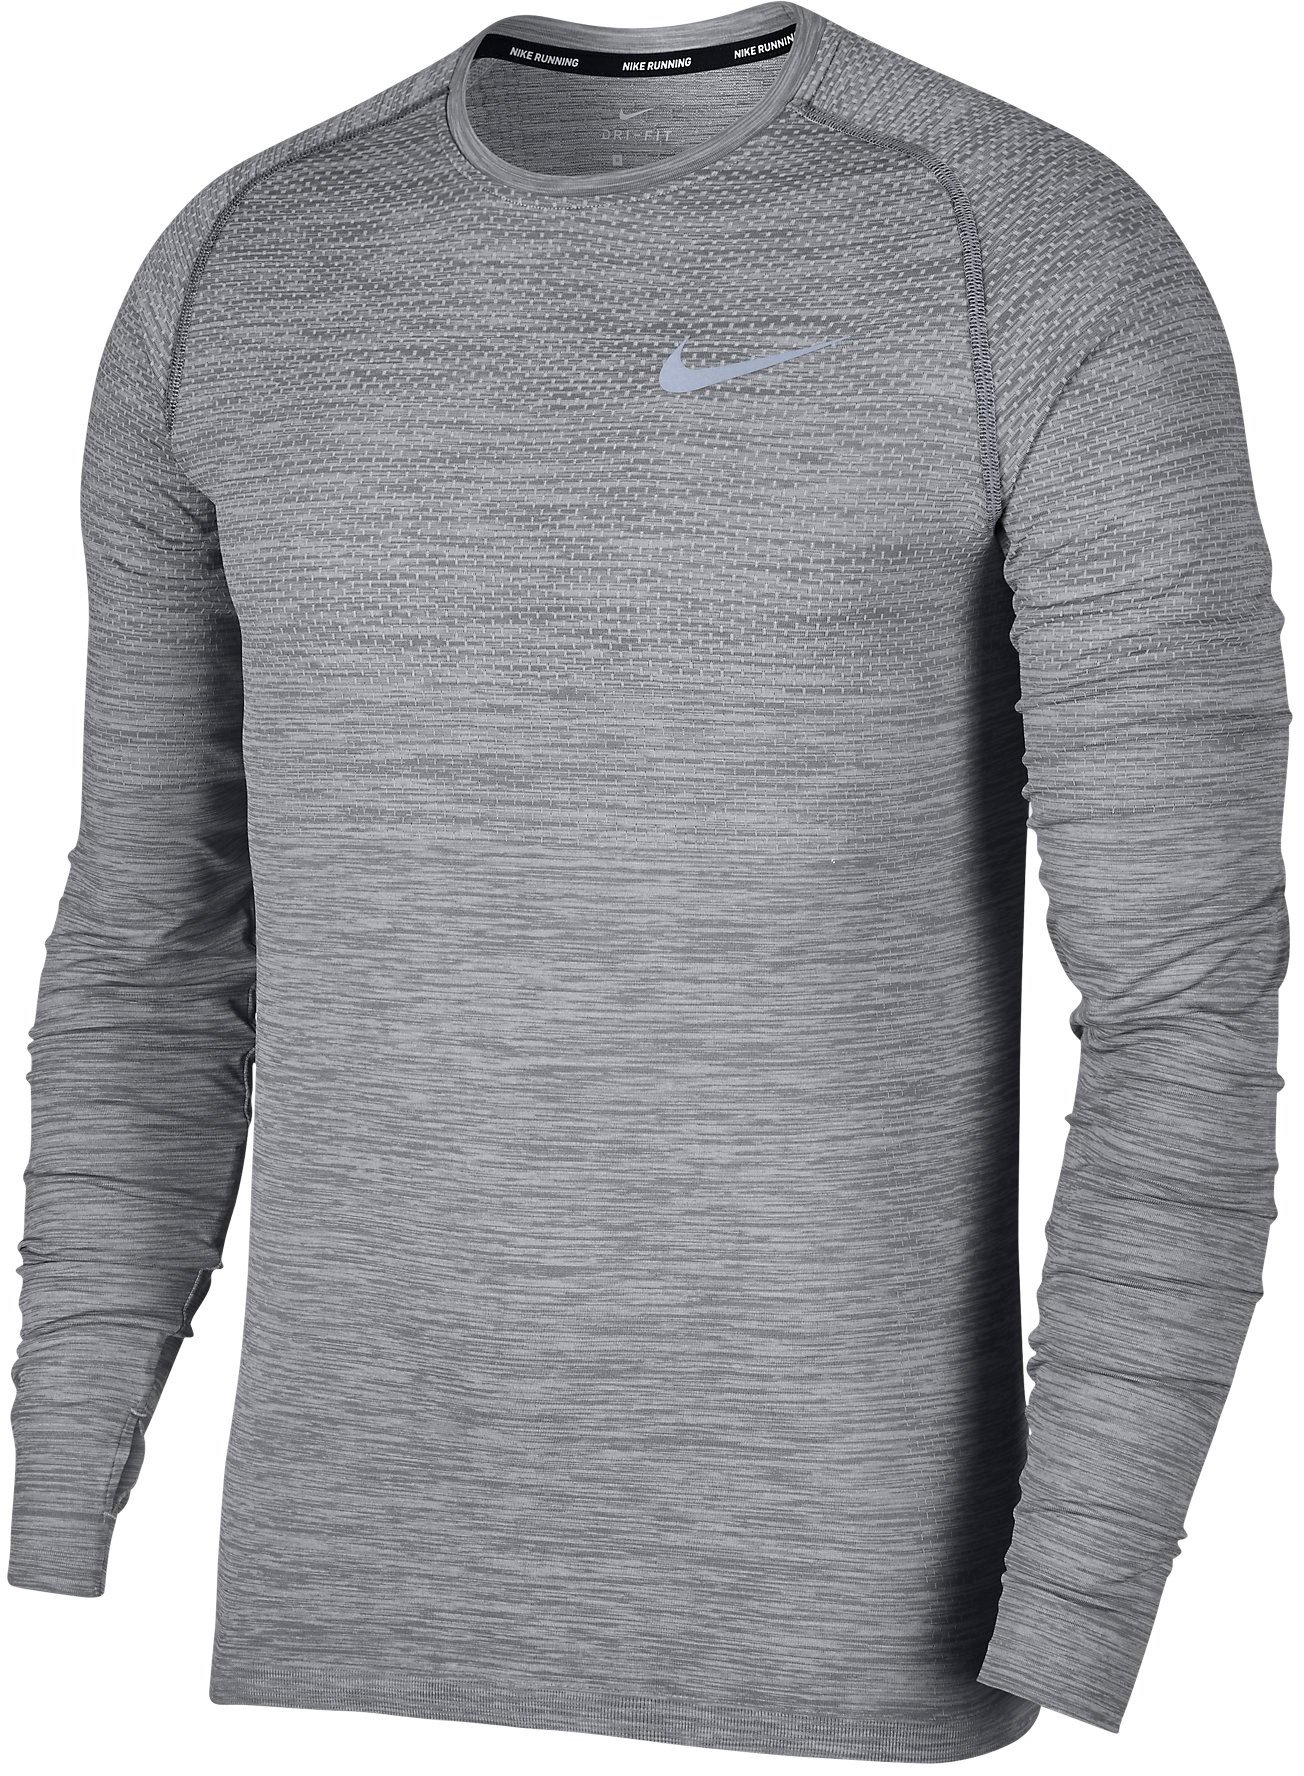 Pánské běžecké tričko s dlouhým rukávem Nike Dry Knit